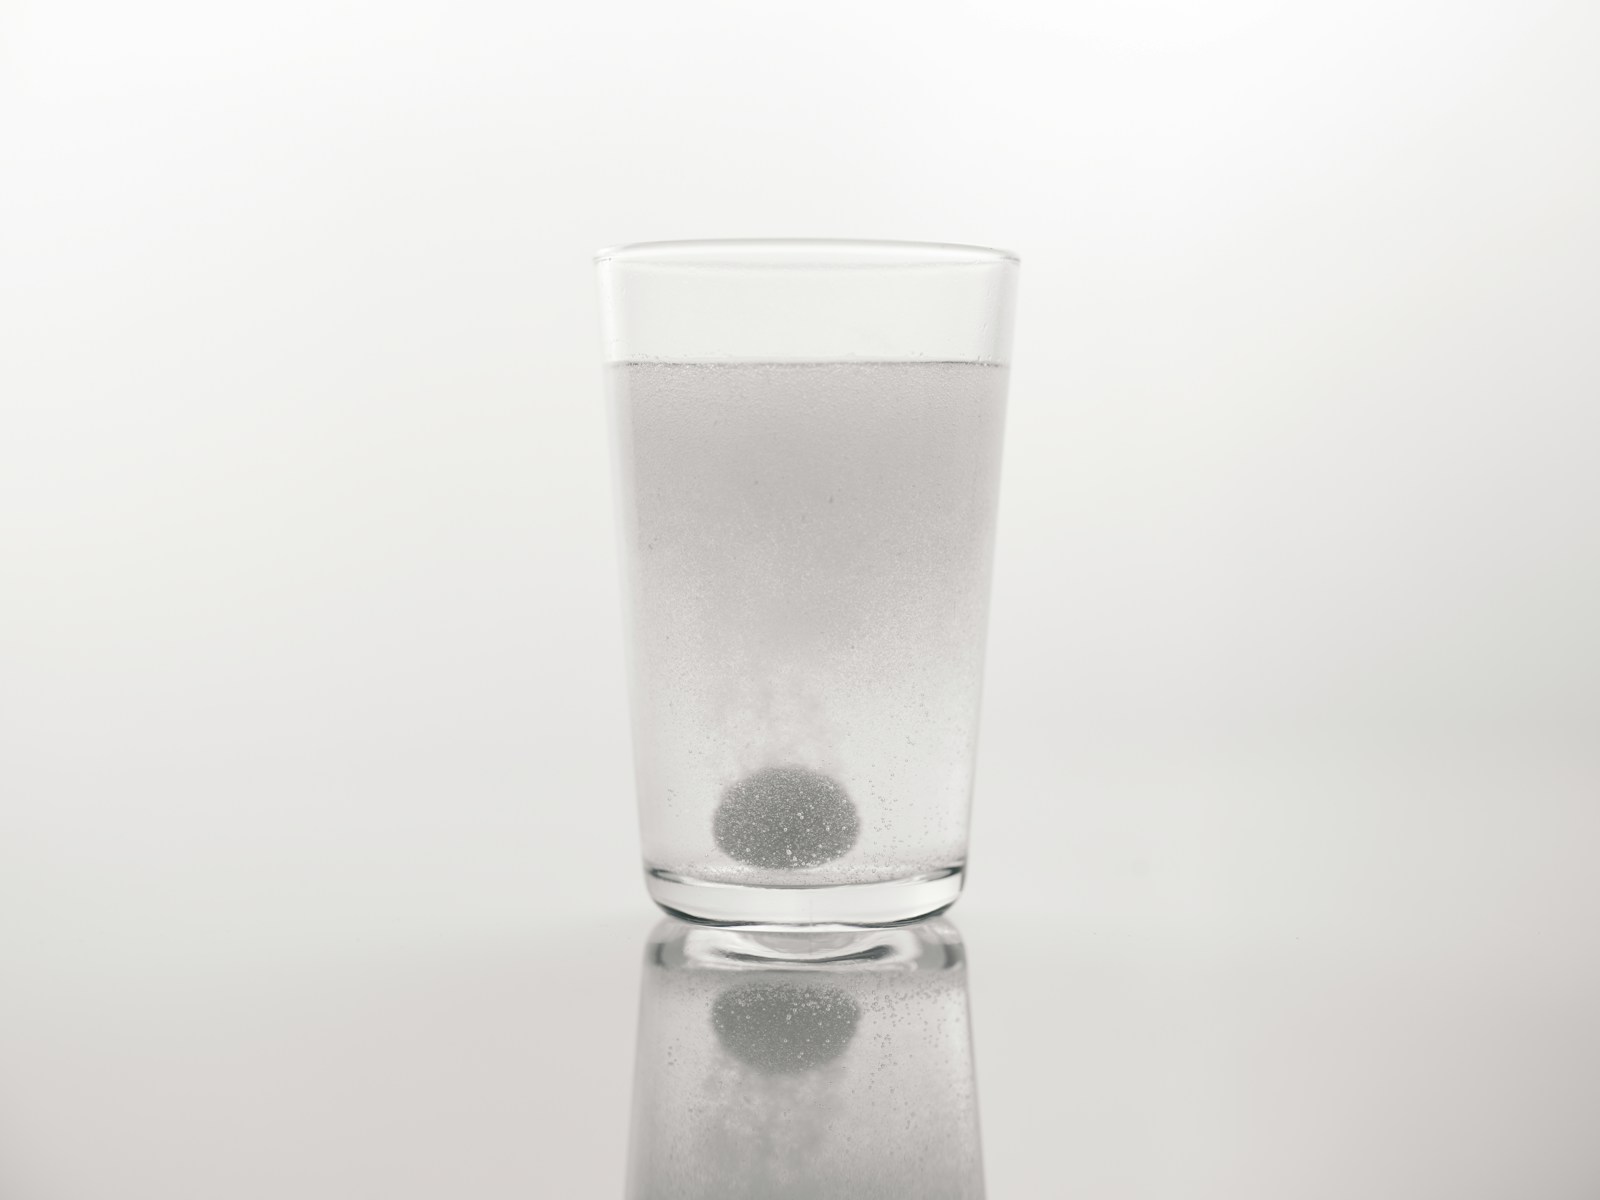 Tabletka musująca w szklance wody